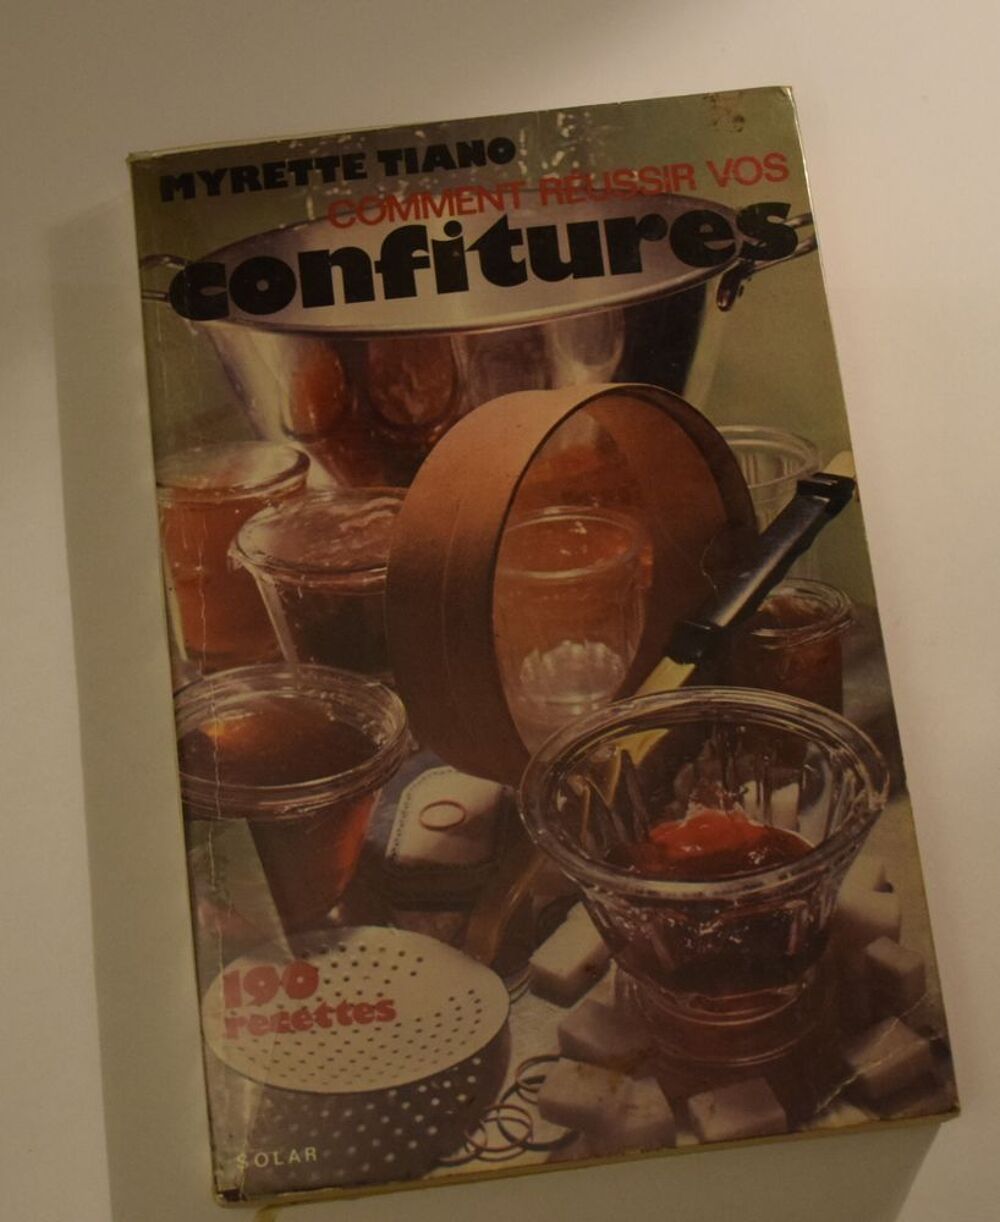 Comment r&eacute;ussir vos Confitures - Myrette Tiano - 1975 Cuisine